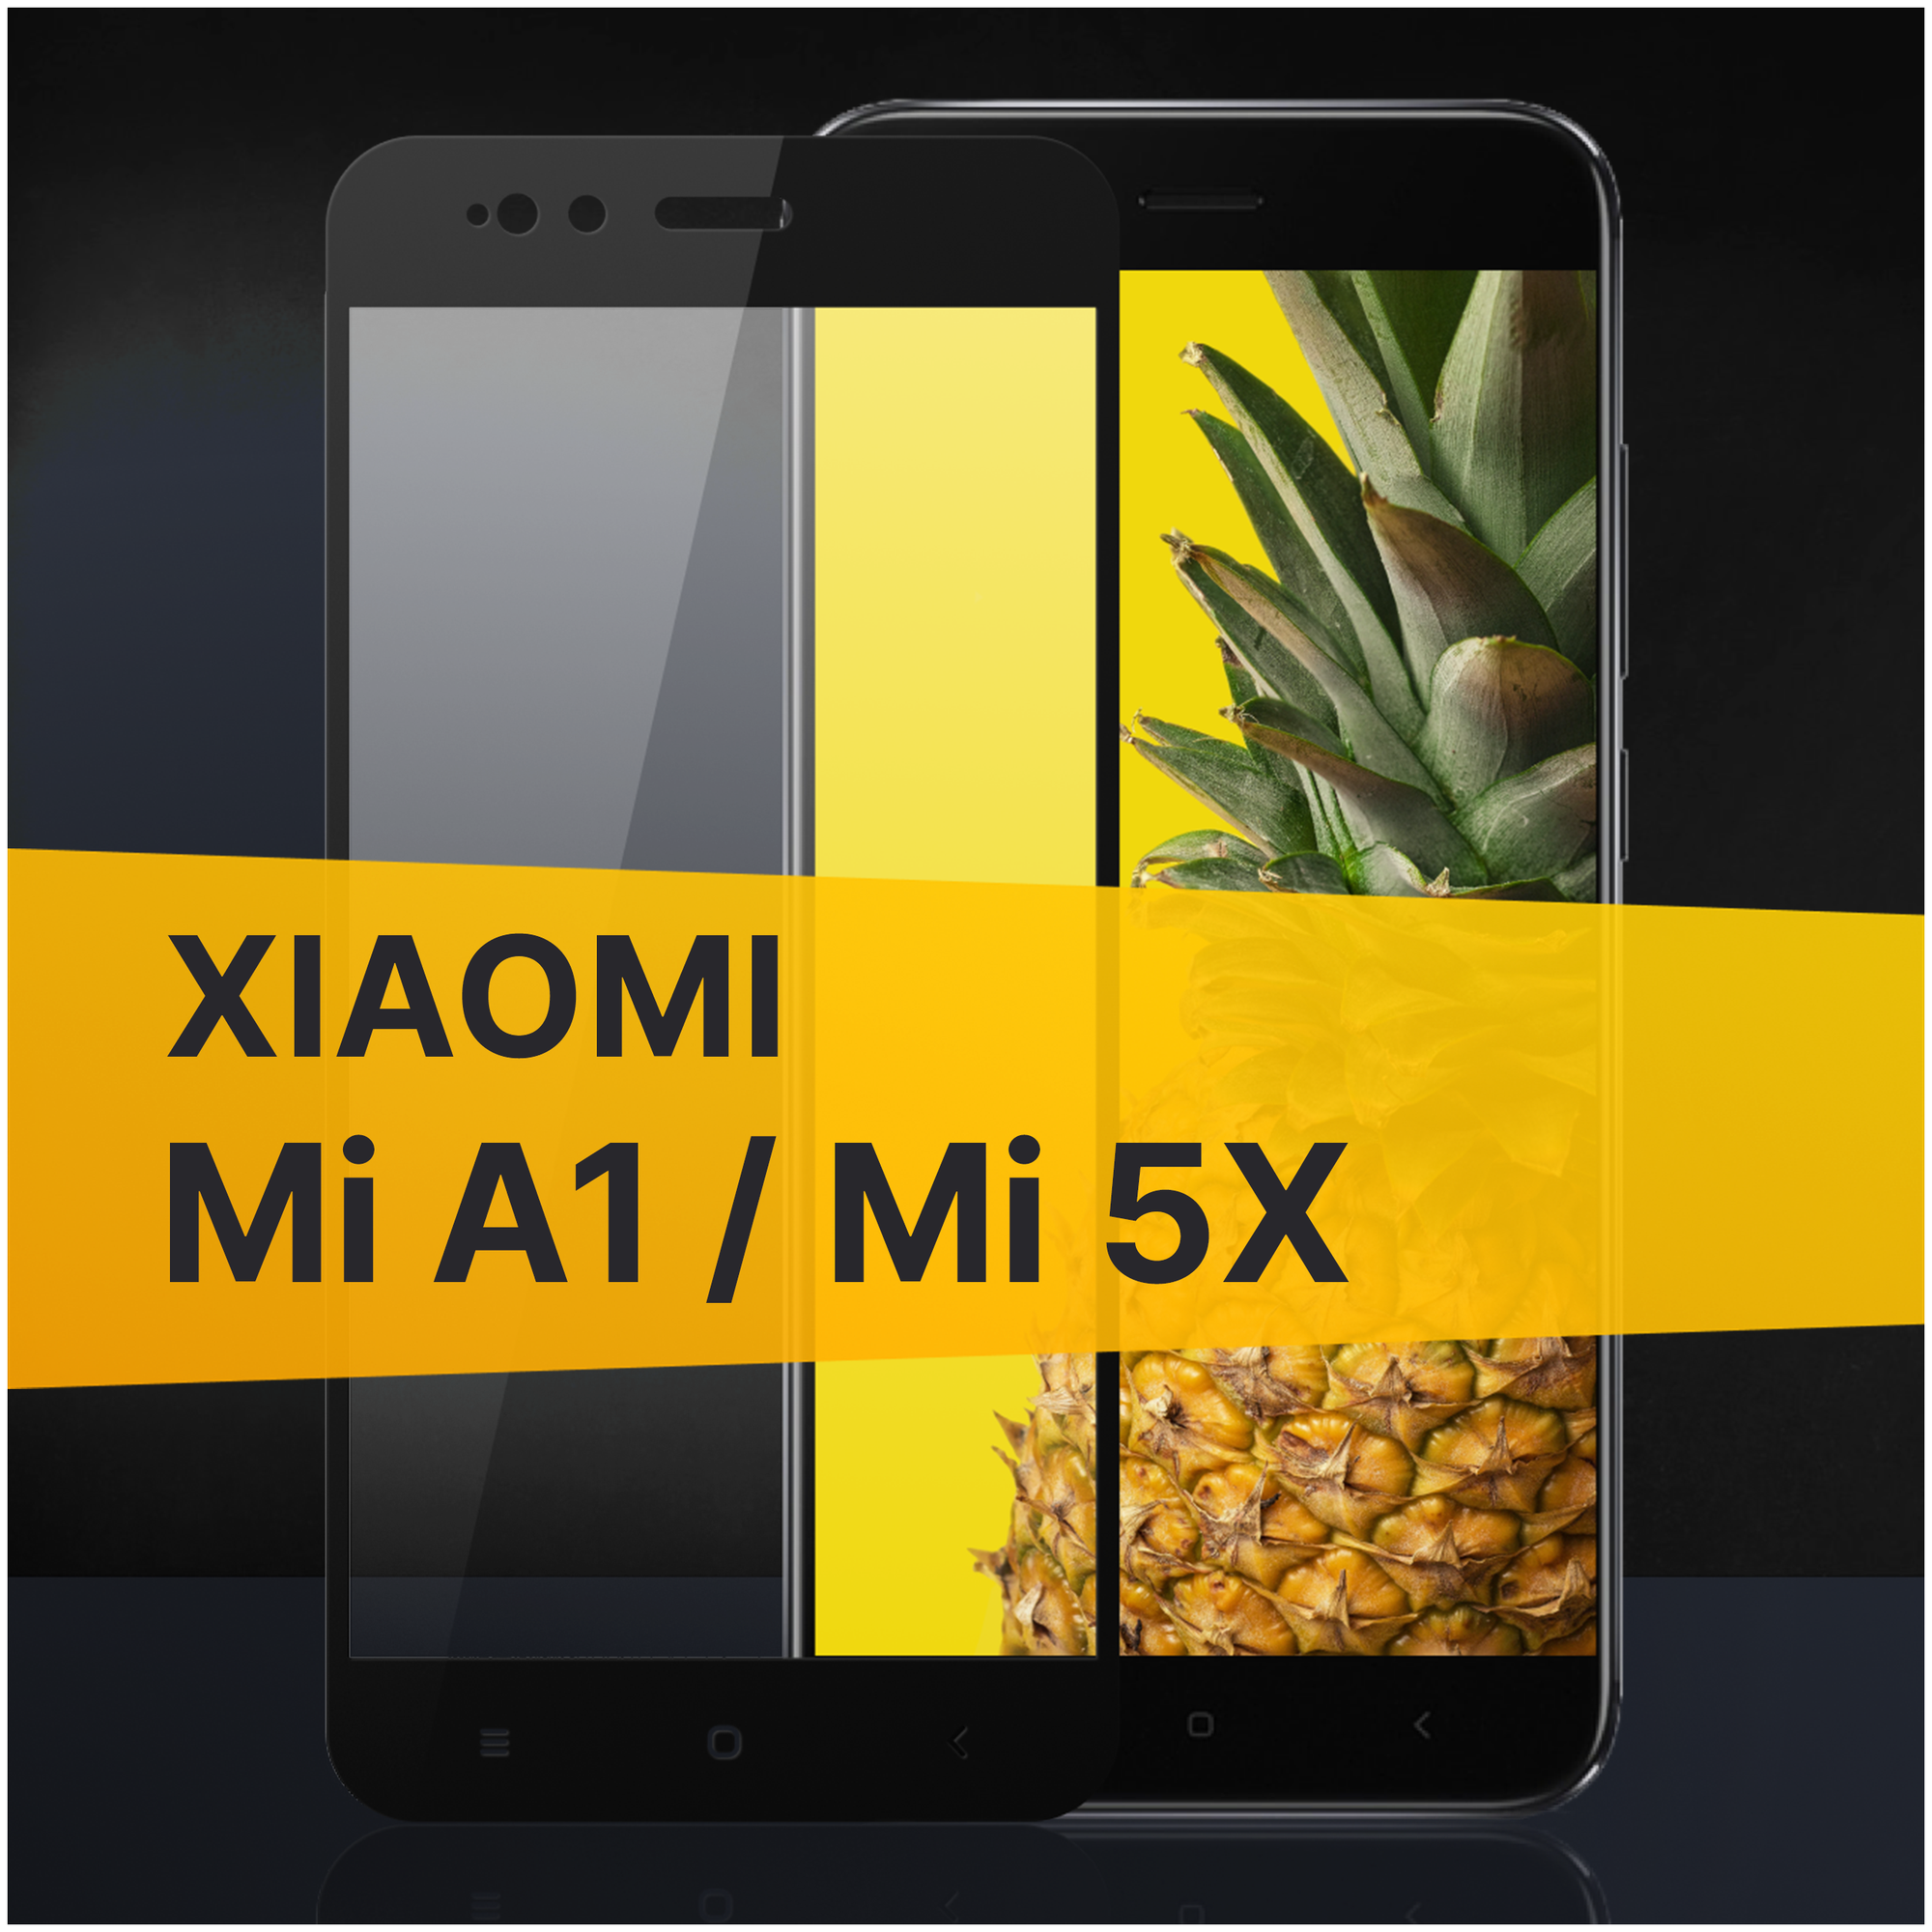 Противоударное защитное стекло для телефона Xiaomi Mi A1 и Mi 5X / Полноклеевое 3D стекло с олеофобным покрытием на Сяоми Ми А1 и Ми 5Х